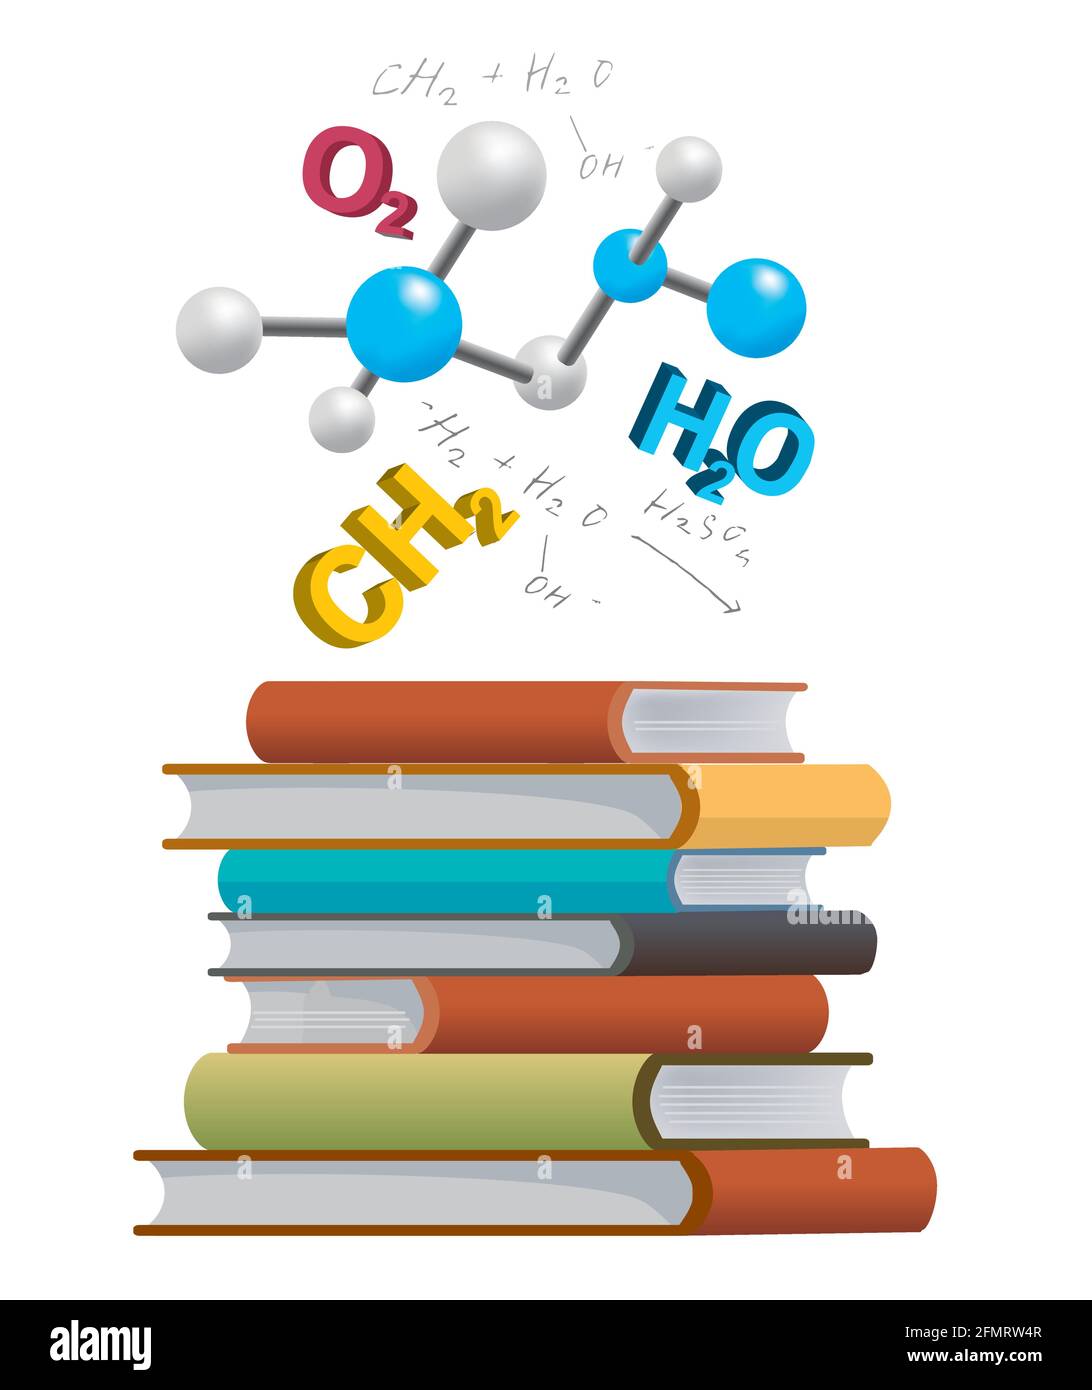 Manuels de chimie. Illustration d'une pile de livres avec des symboles chimiques 3d et des formules. Vecteur disponible. Illustration de Vecteur